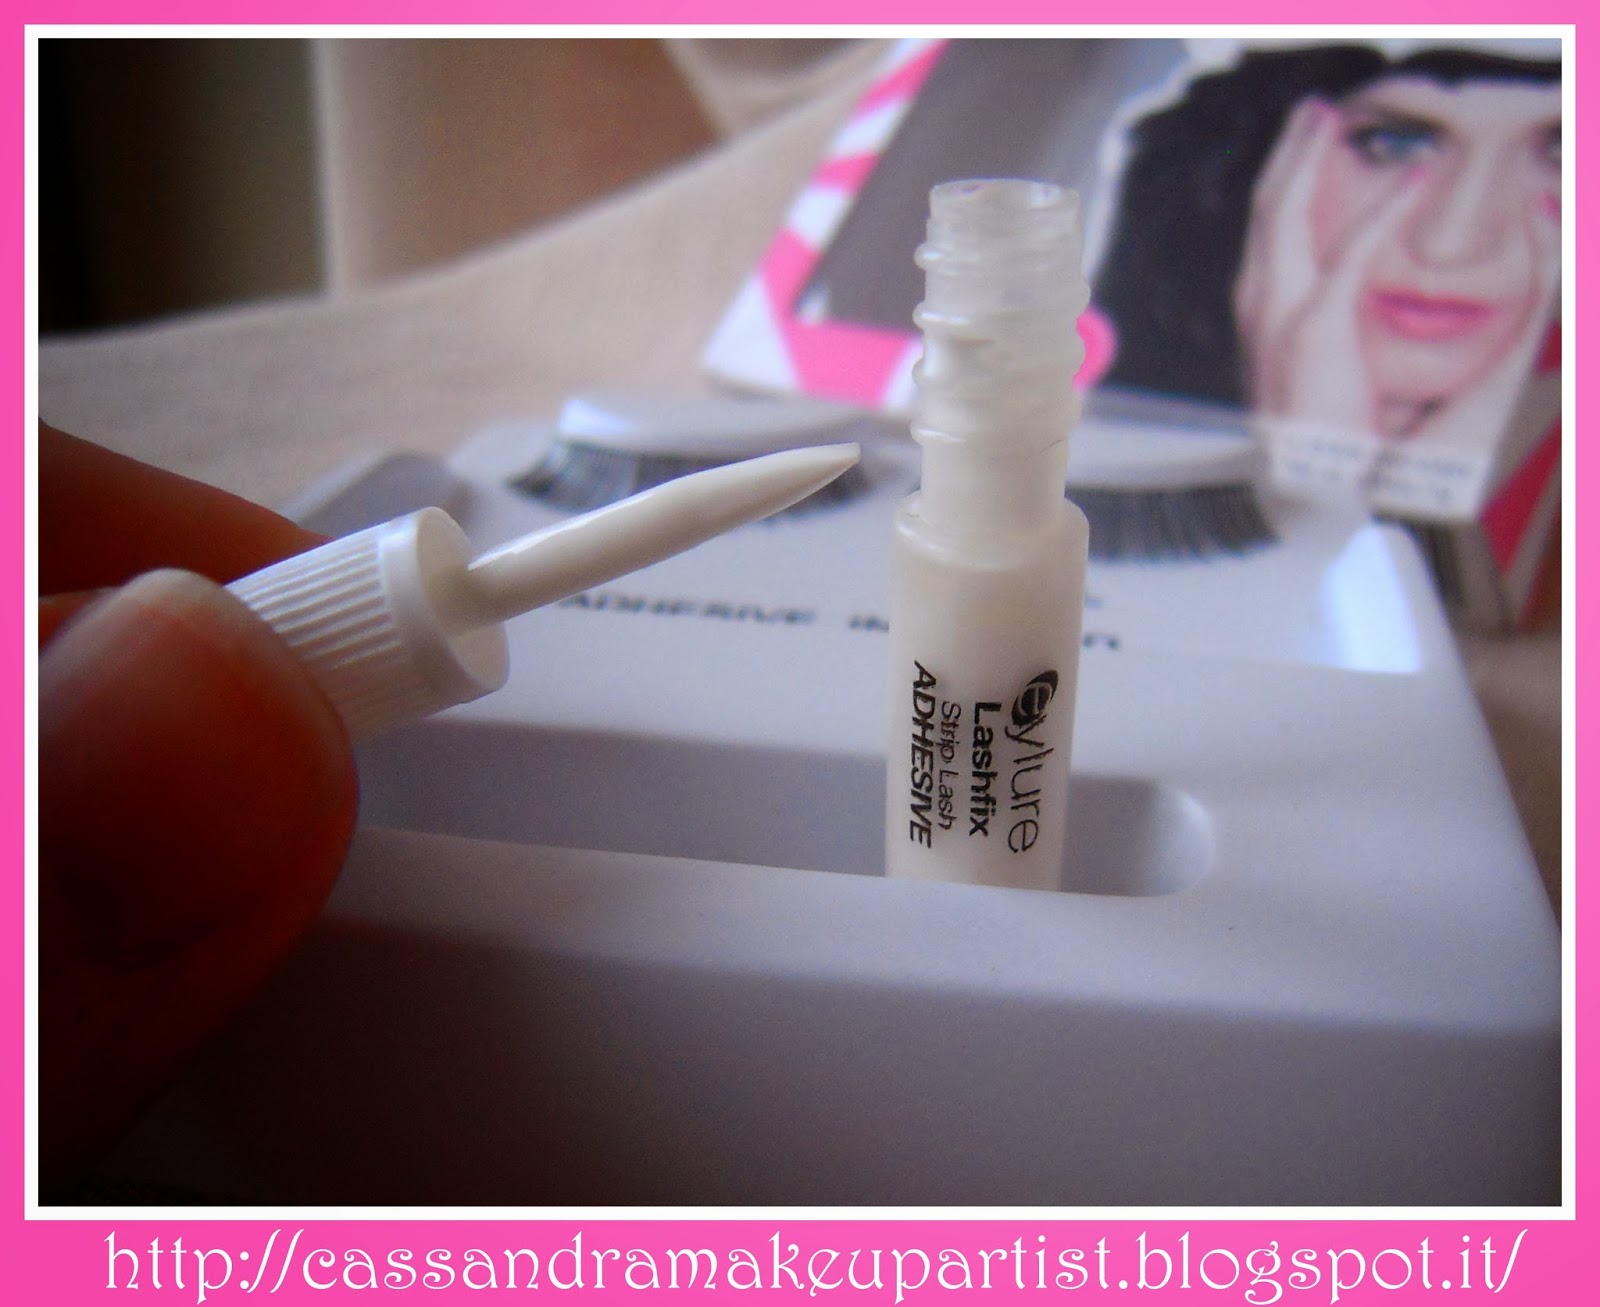 EYLURE - Katy Perry Lashes - SWEETIE PIE -false lashes - ciglia finte - colla - prezzo - price - recensione - review - nude - naturali - glue - ciglia a nastro - tutorial - lashes adhesive